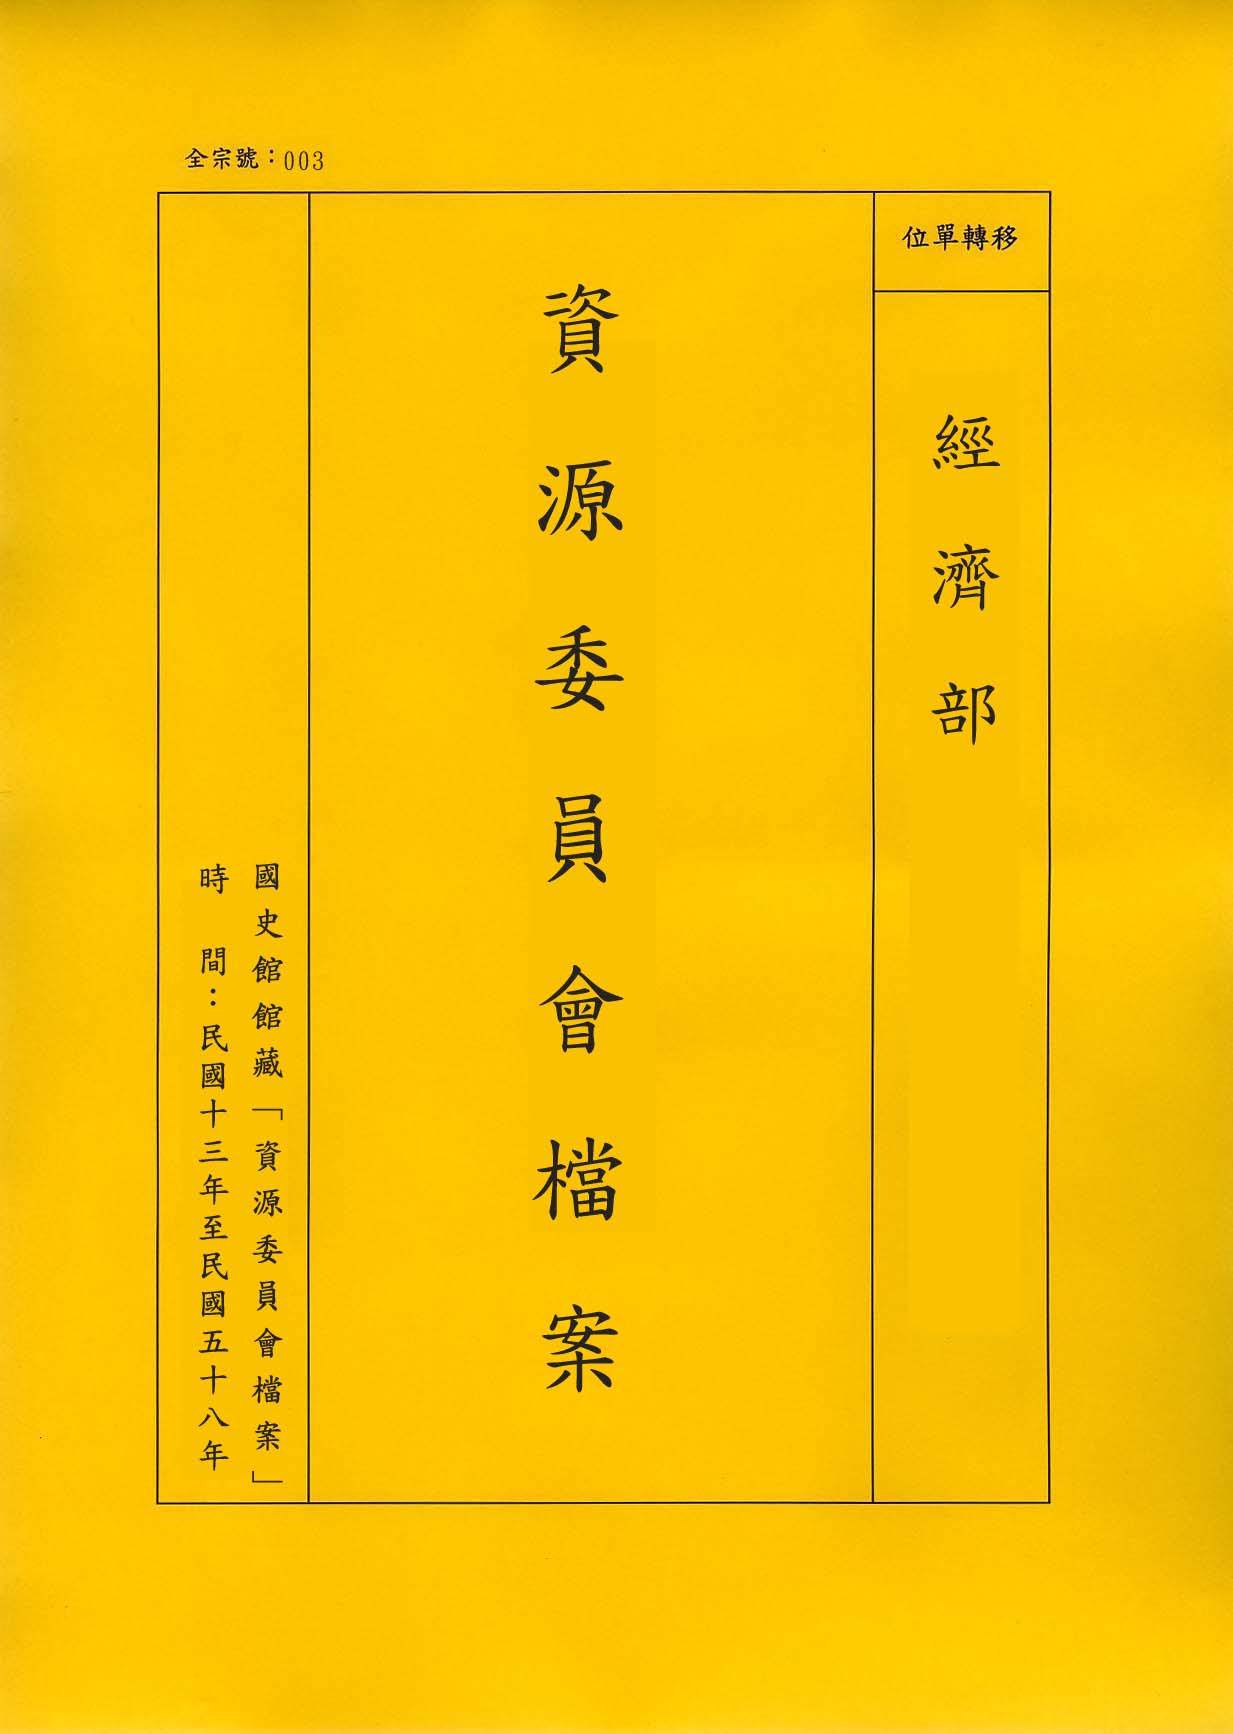 卷名:銅鐵皮管工廠調查表─上海(003-010306-0086)